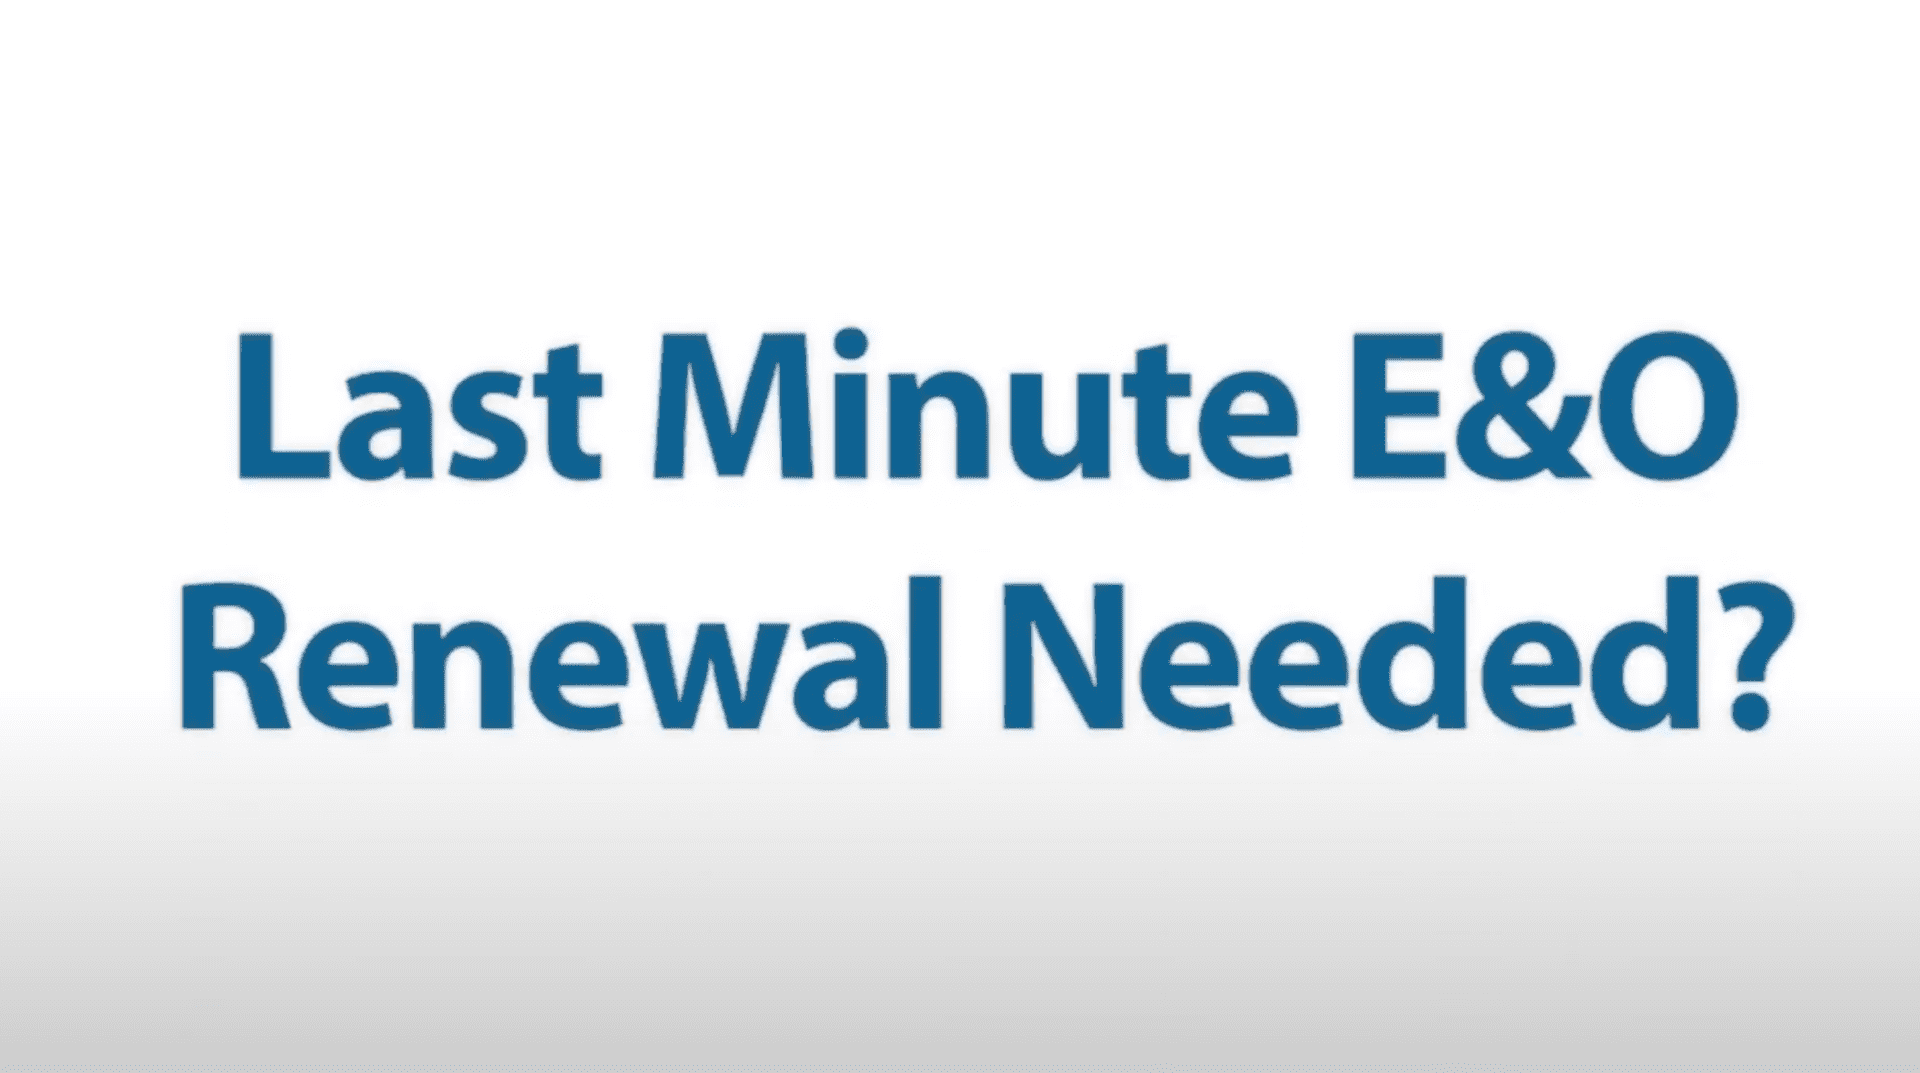 Need a last minute E&O Renewal?